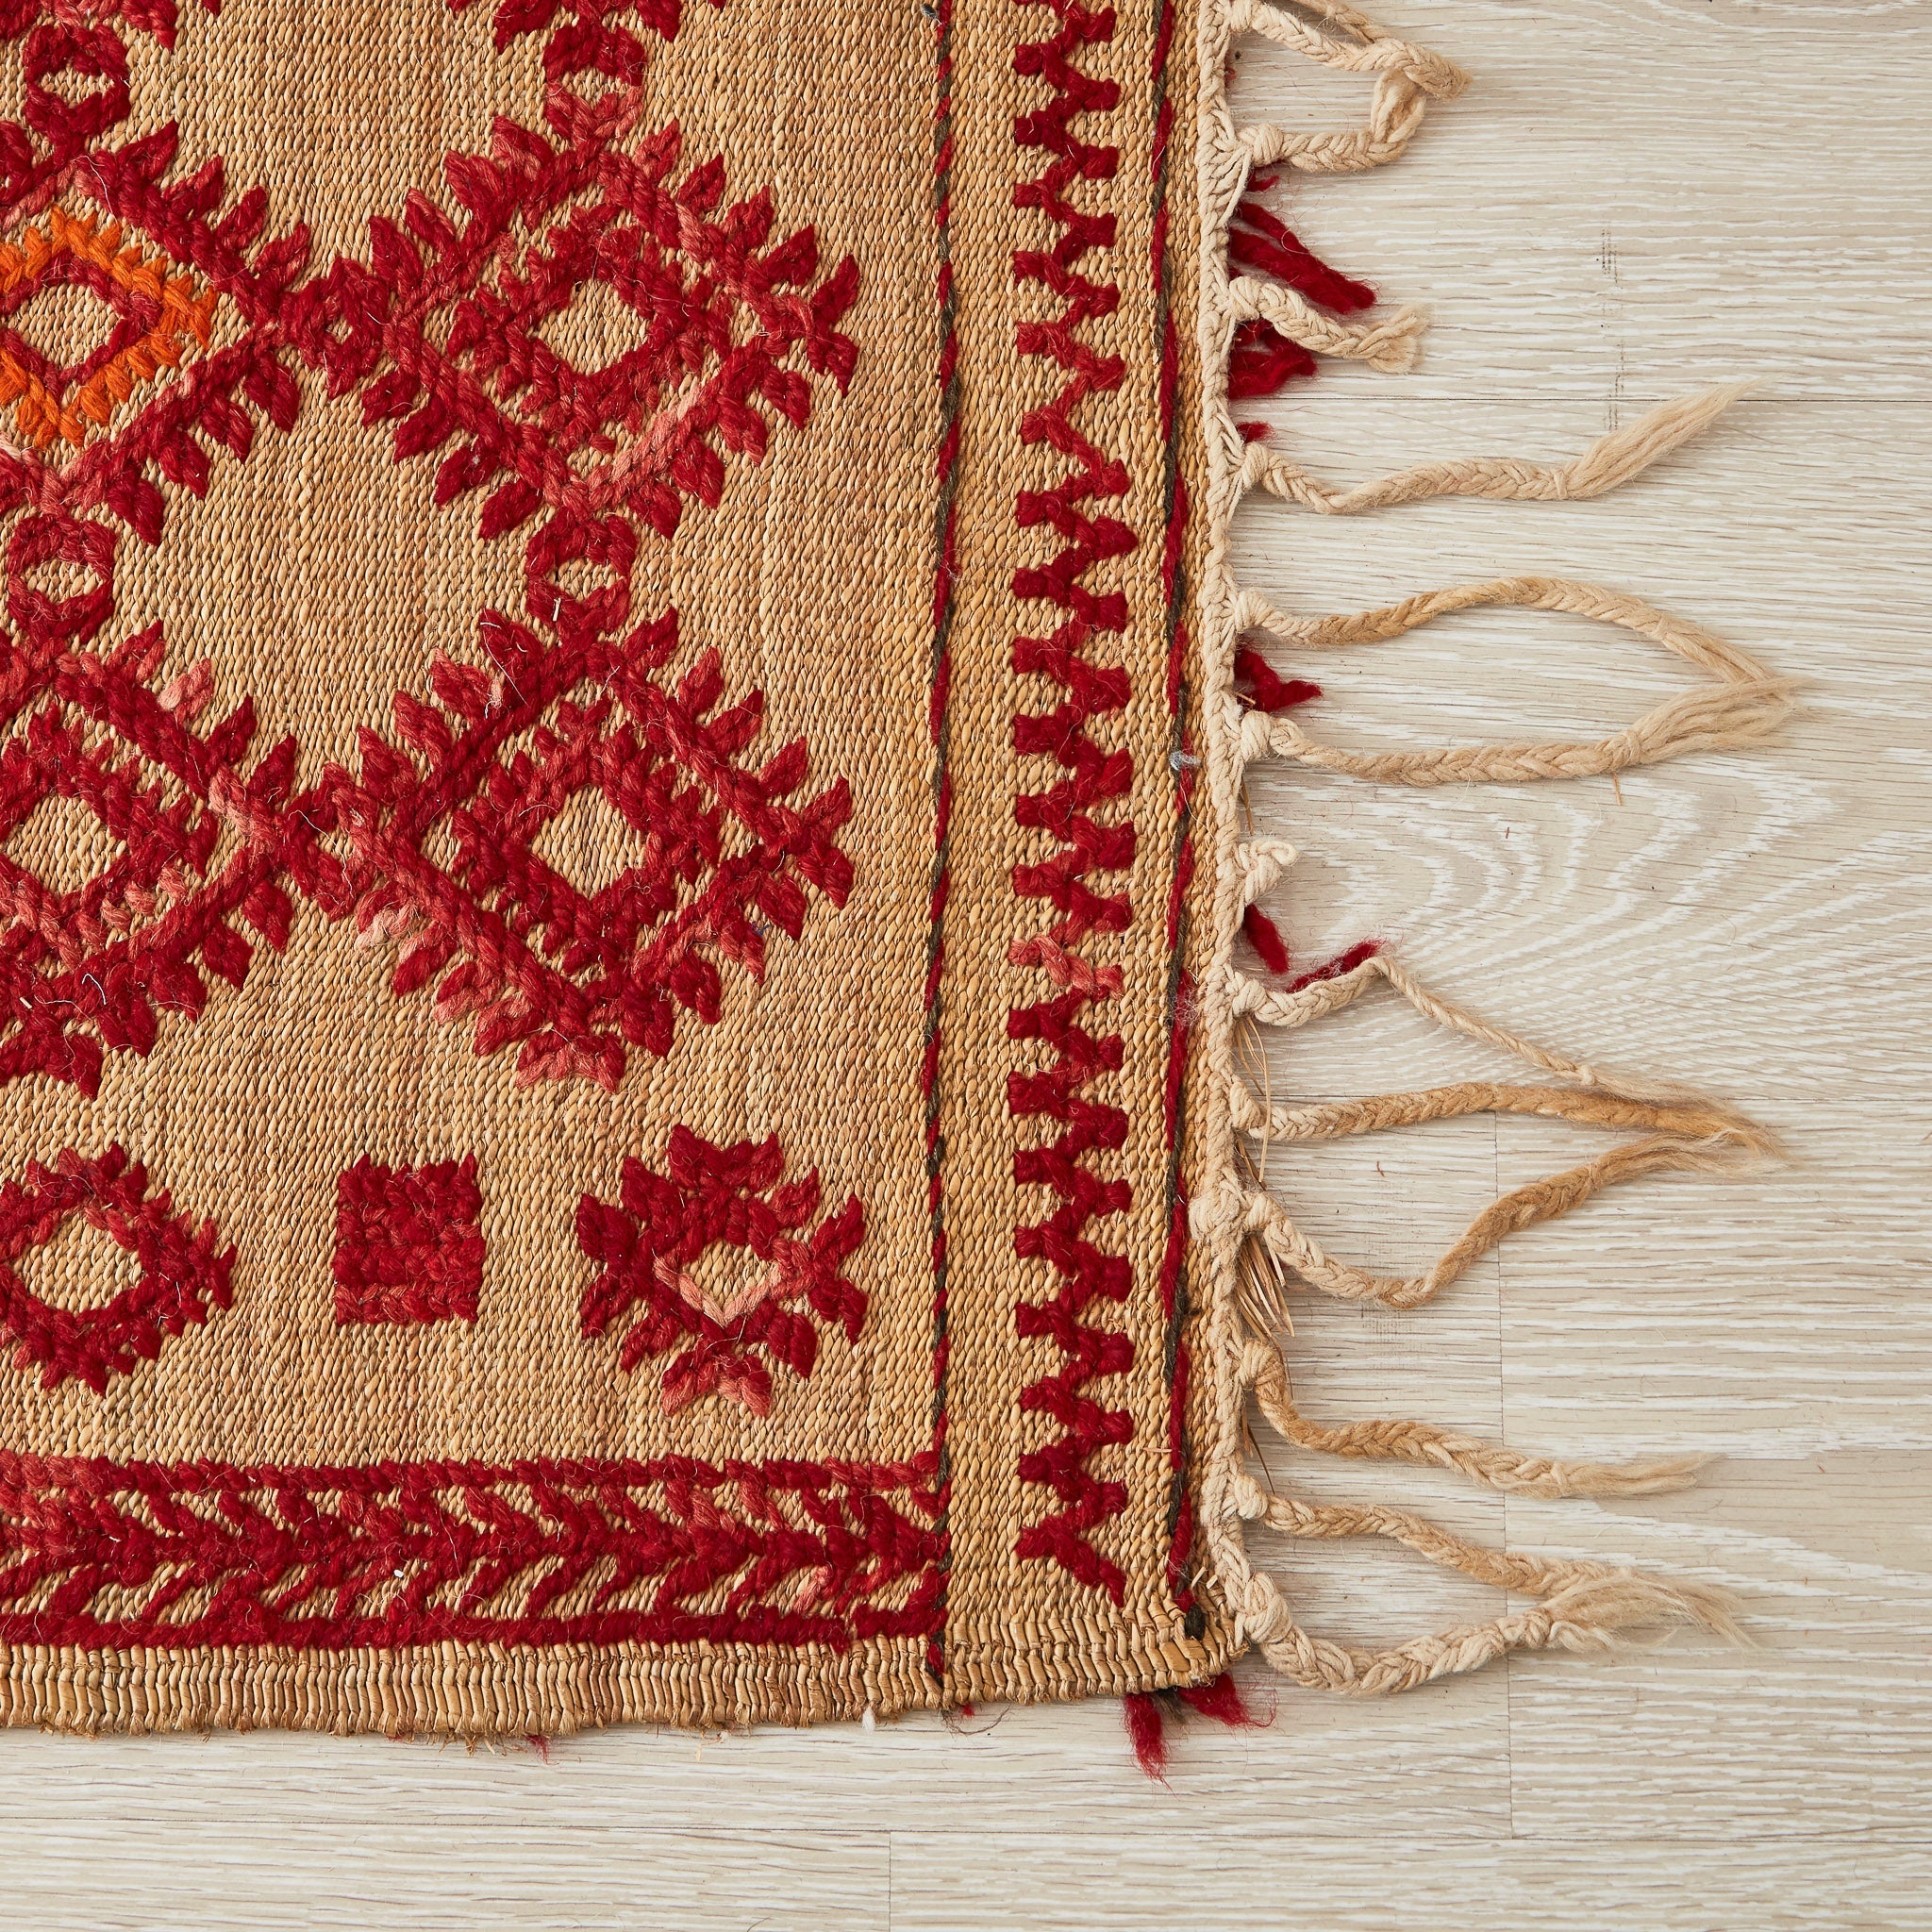 tappeto hassira in paglia con tessitura in lana rossa dettaglio frangia